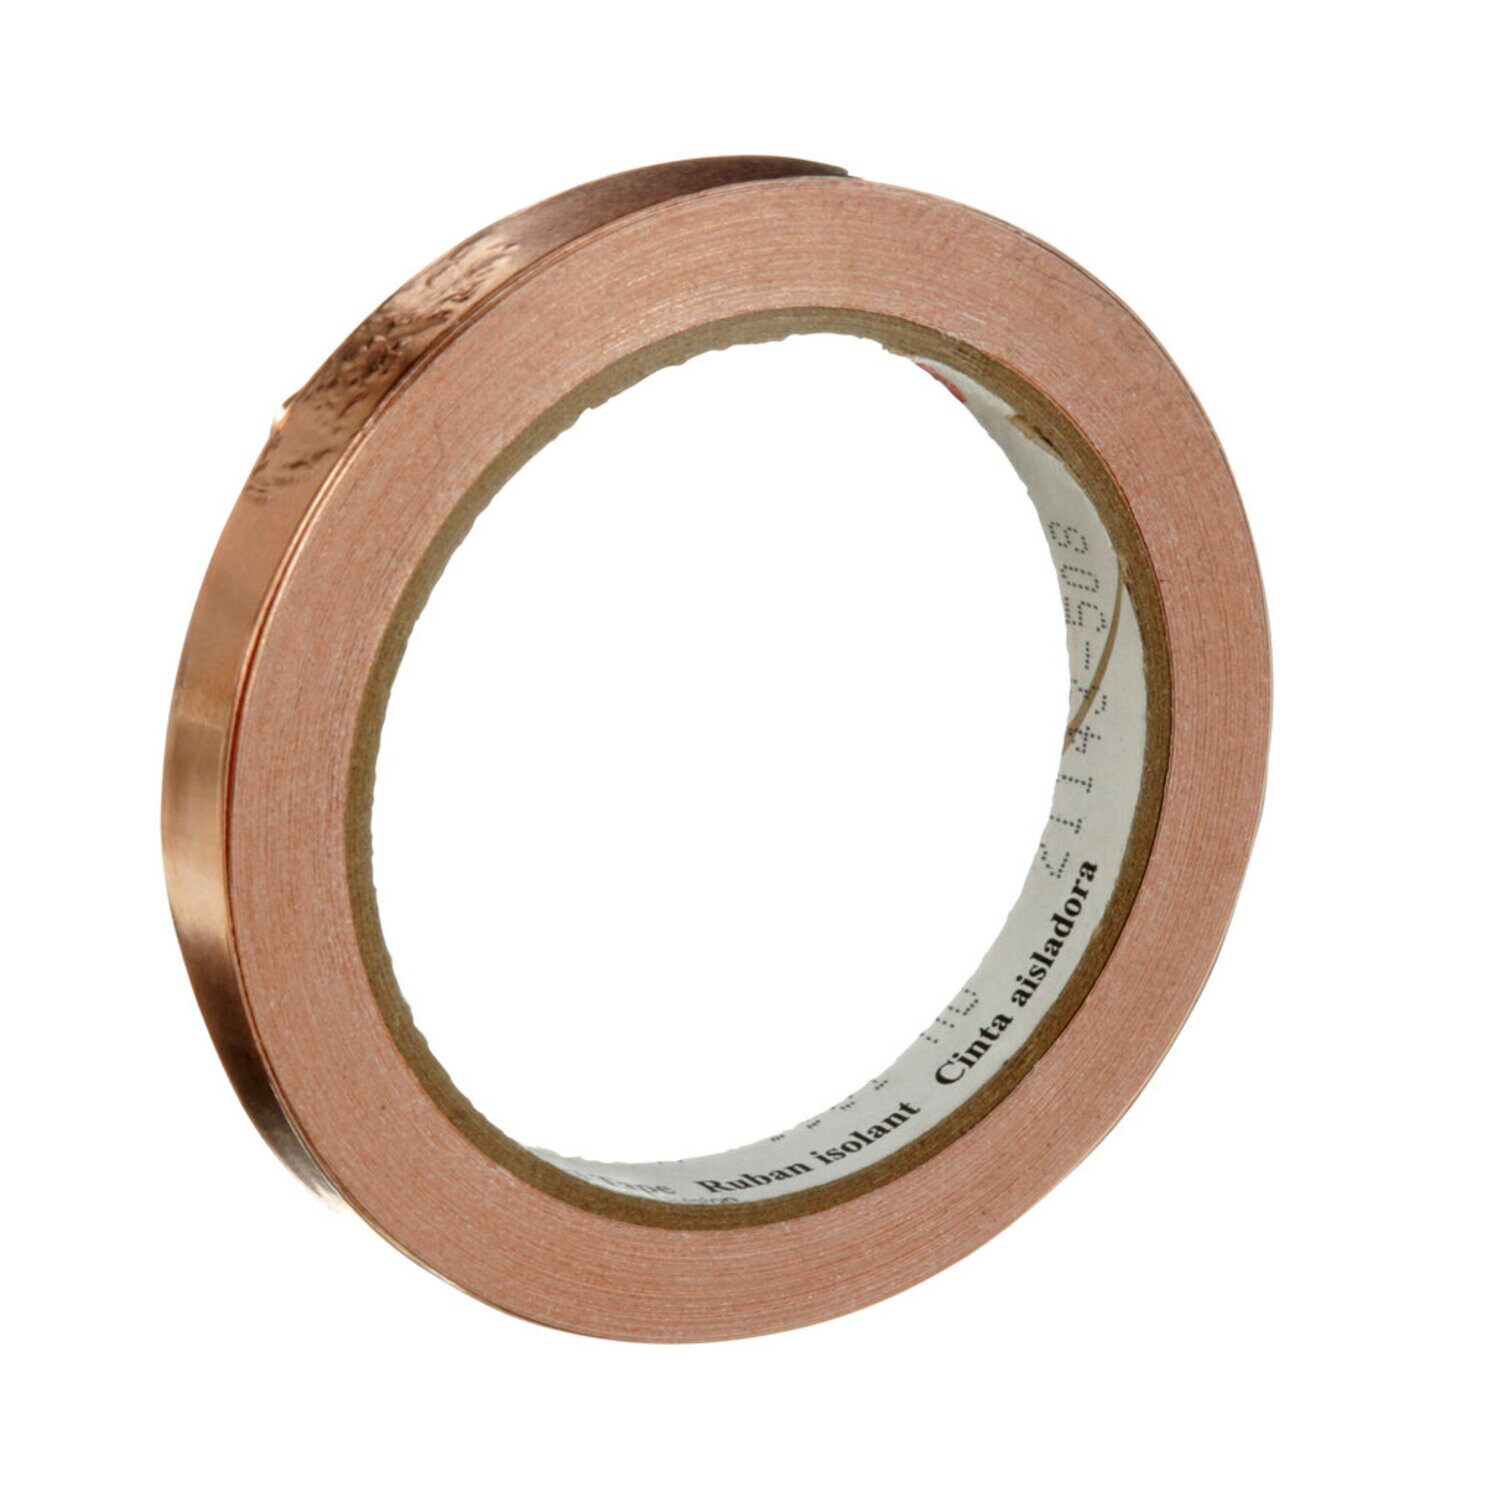 7000132182 - 3M EMI Copper Foil Shielding Tape 1181, 1/2 in x 18 yd (12.70 mm x 16.5
m), 18/case